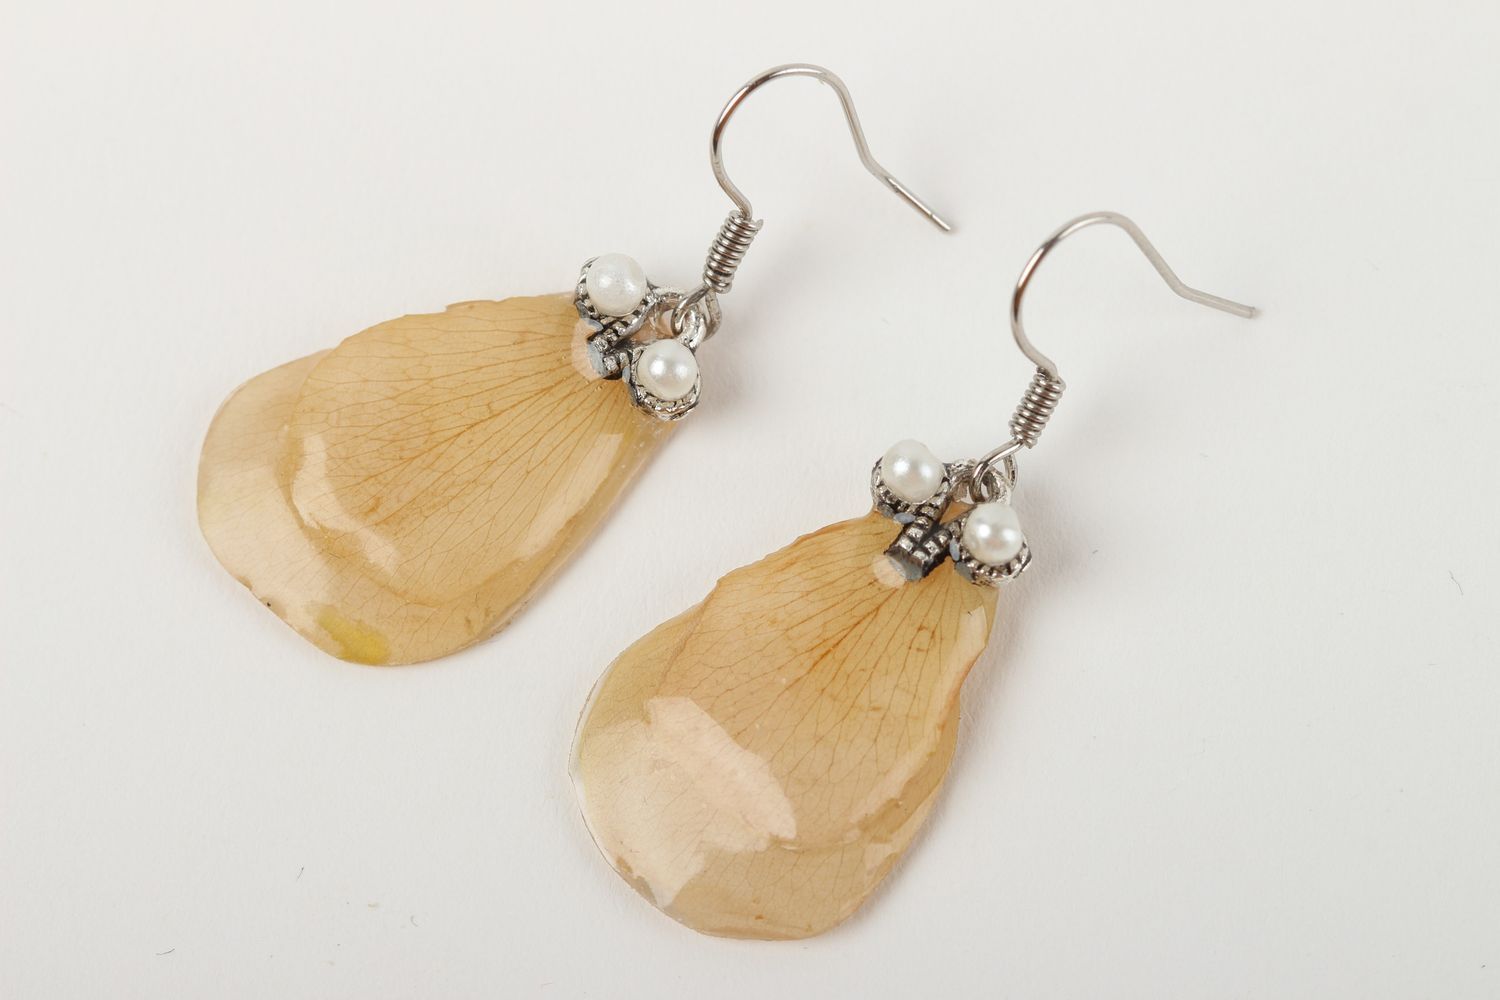 Handmade earrings unusual earrings for women gift ideas epoxy earrings photo 2